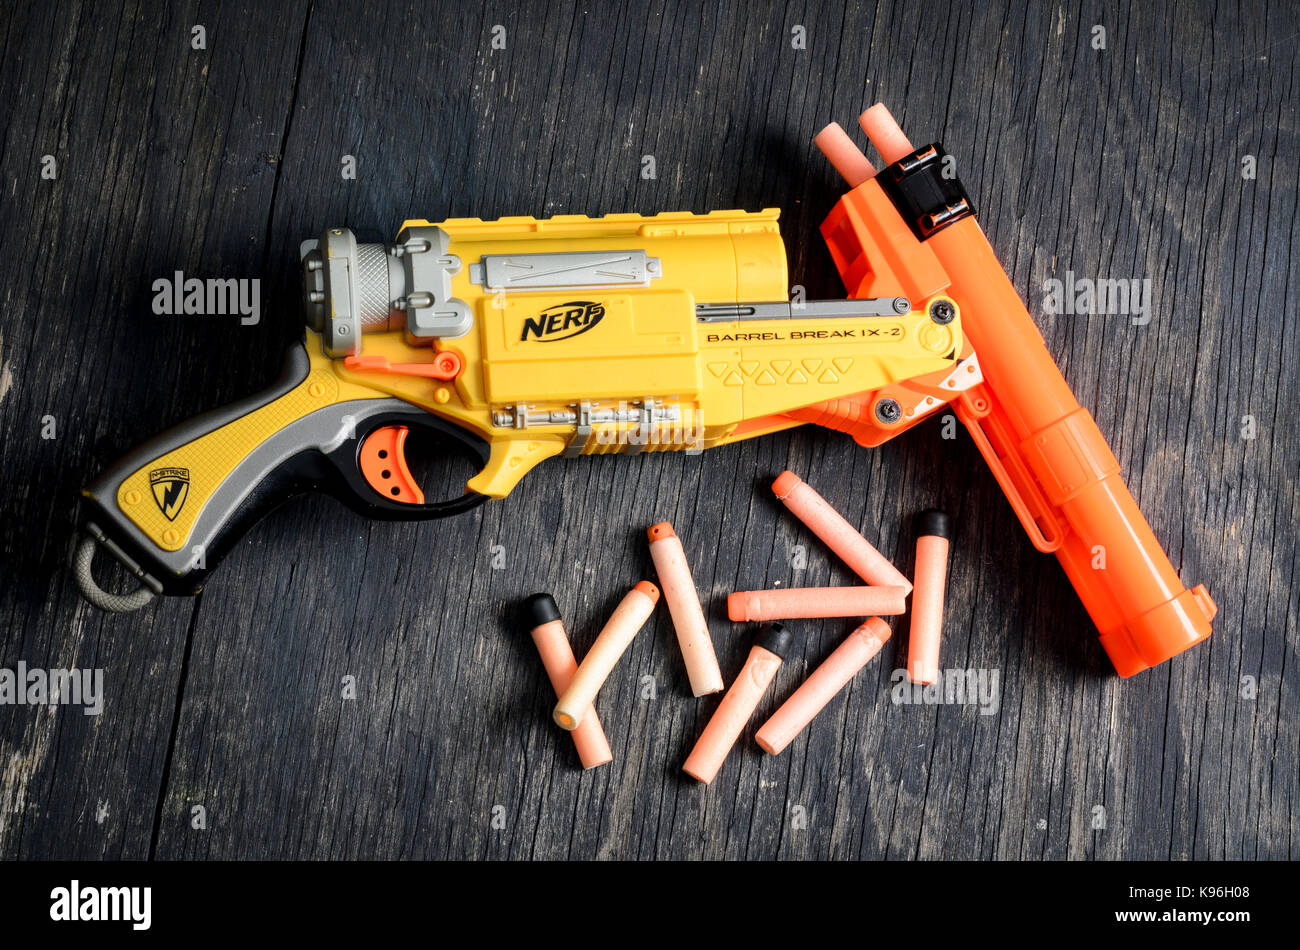 Nerf Dart Pistole und Schaum Kugeln Stockfotografie - Alamy